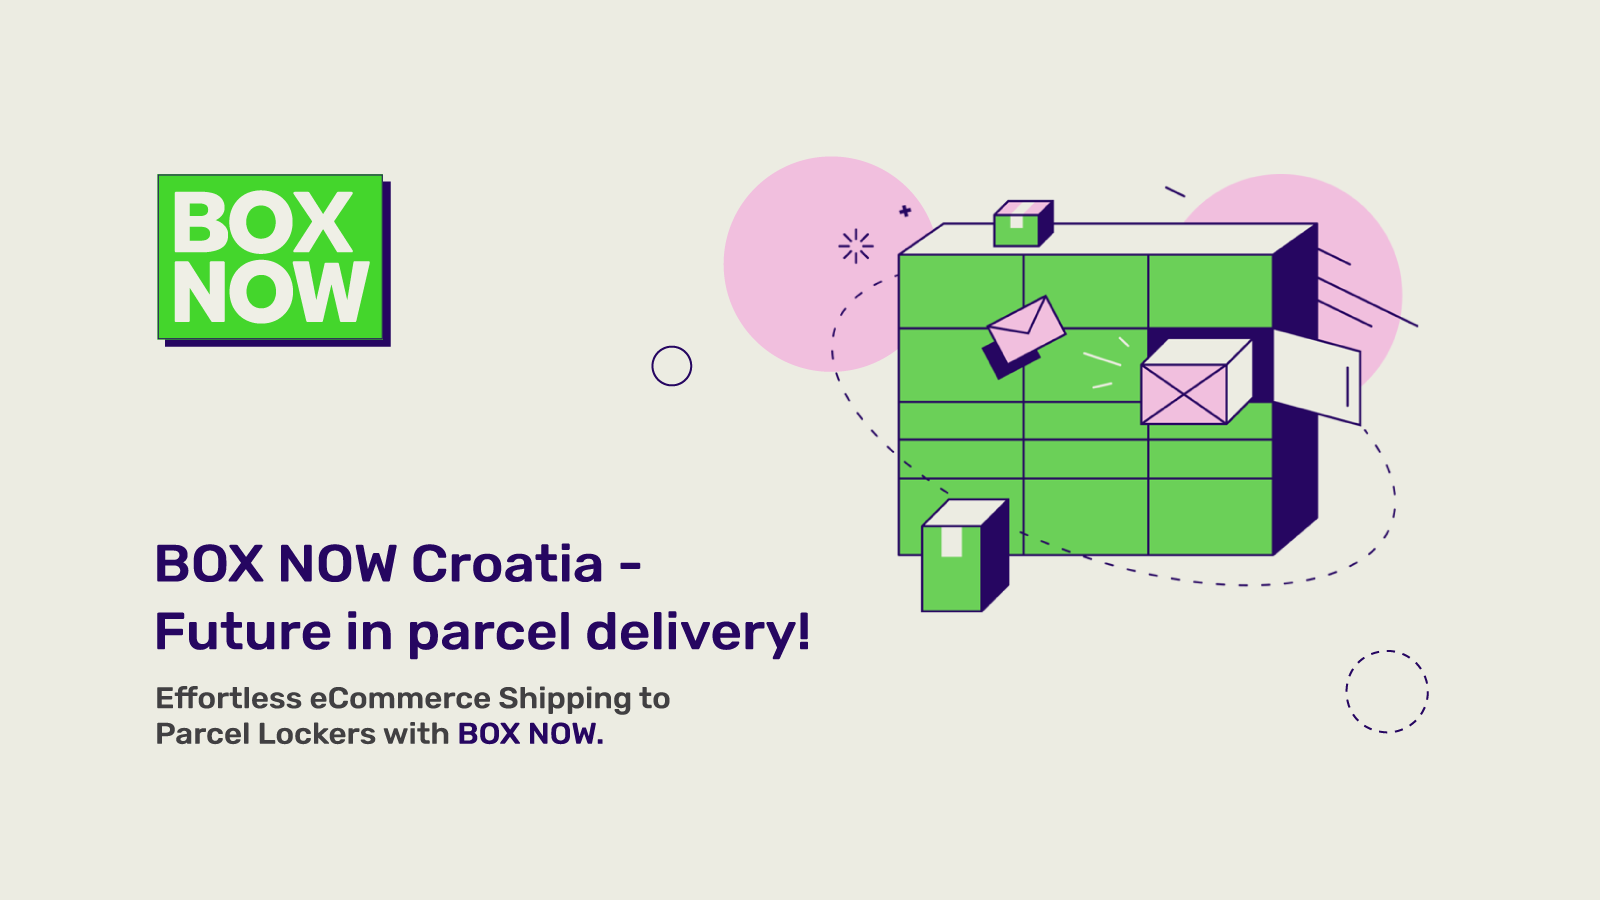 BOX NOW Croatia - L'avenir de la livraison de colis !